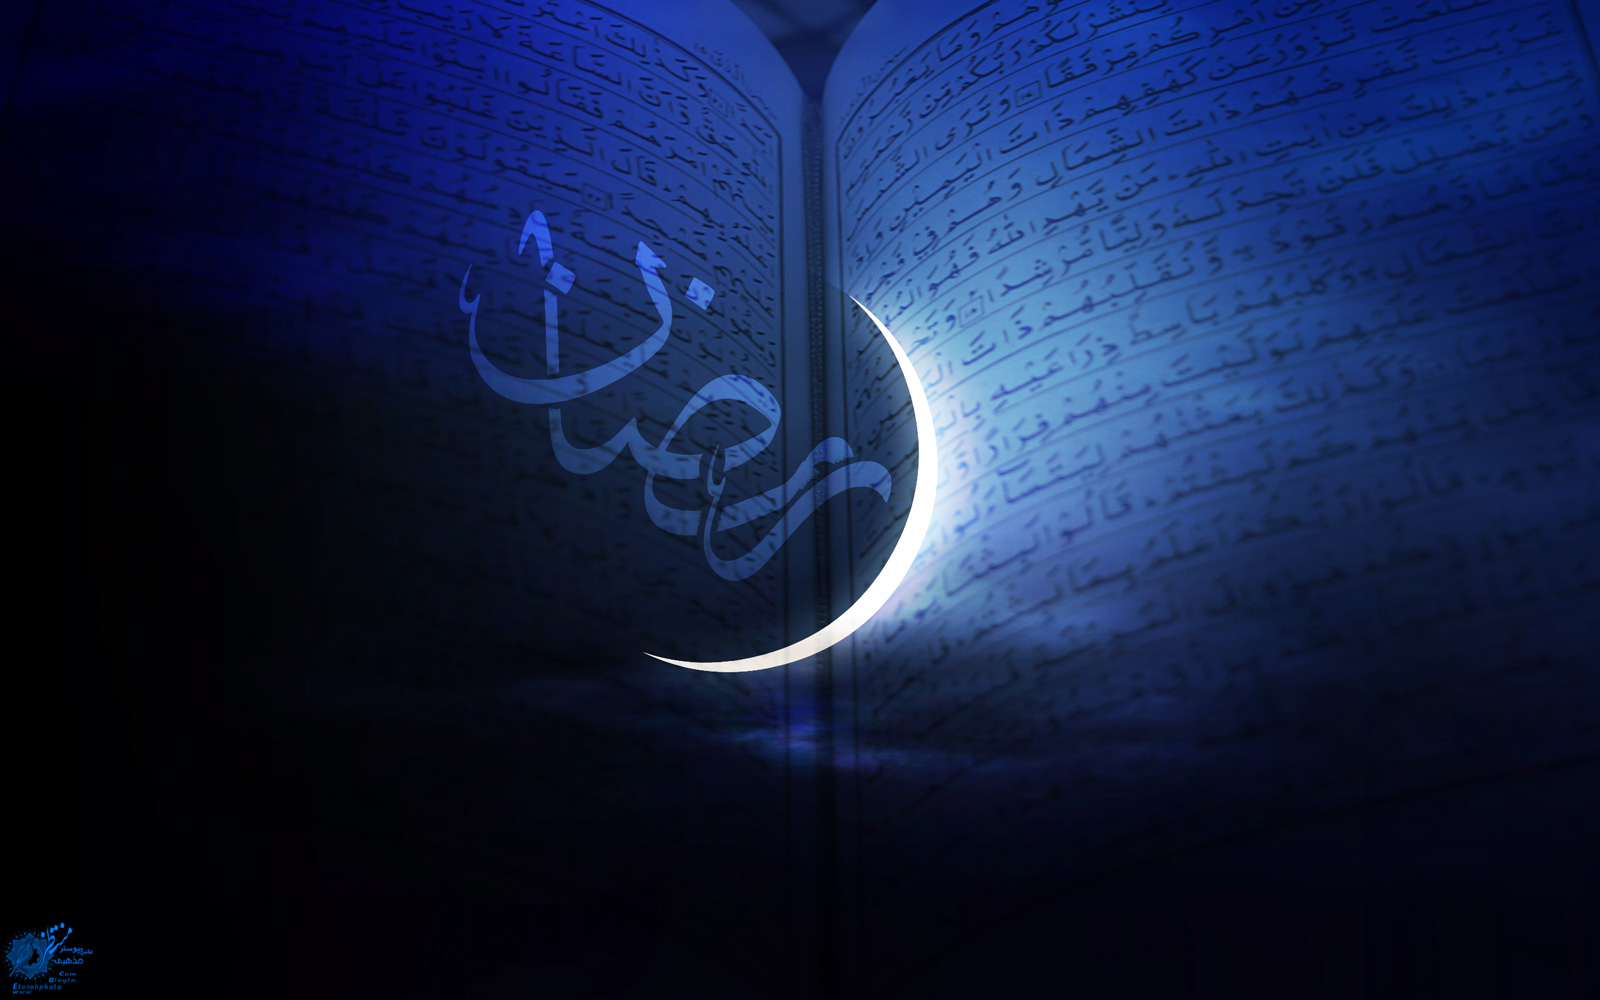 شنبه اول ماه مبارک رمضان است